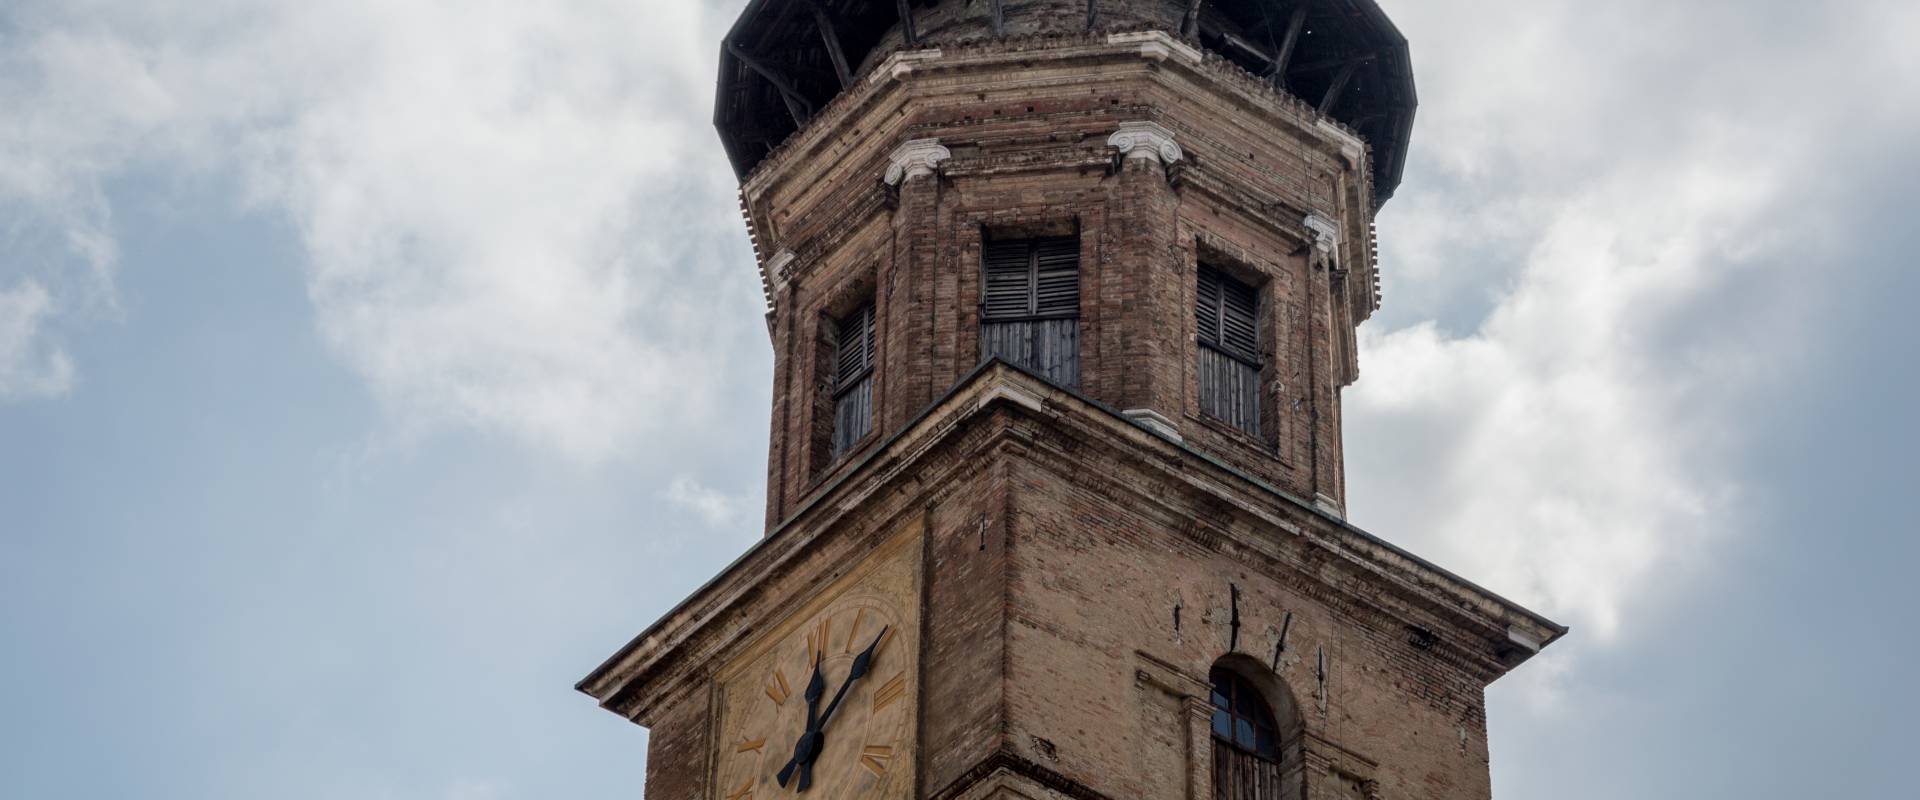 Torre Campanaria - Basilica della Ghiara foto di Alessandro Azzolini